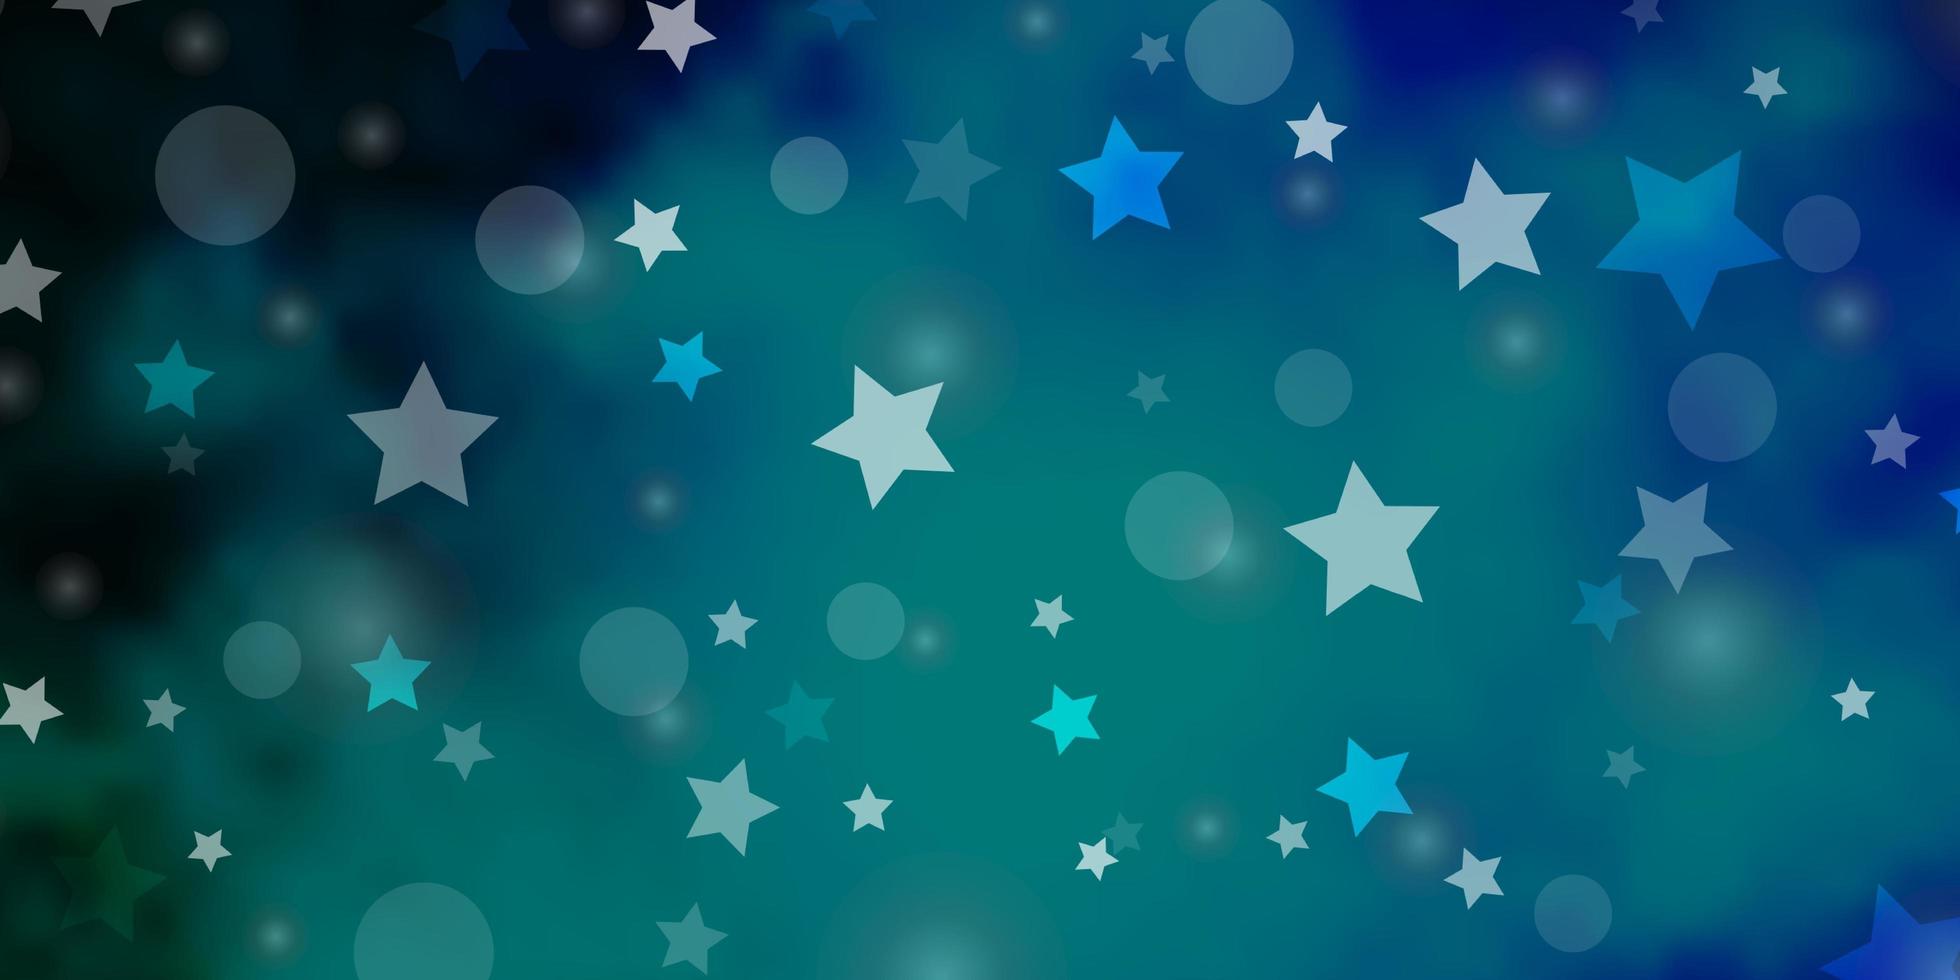 modello vettoriale blu scuro con cerchi, stelle. illustrazione con set di sfere astratte colorate, stelle. modello per biglietti da visita, siti Web.